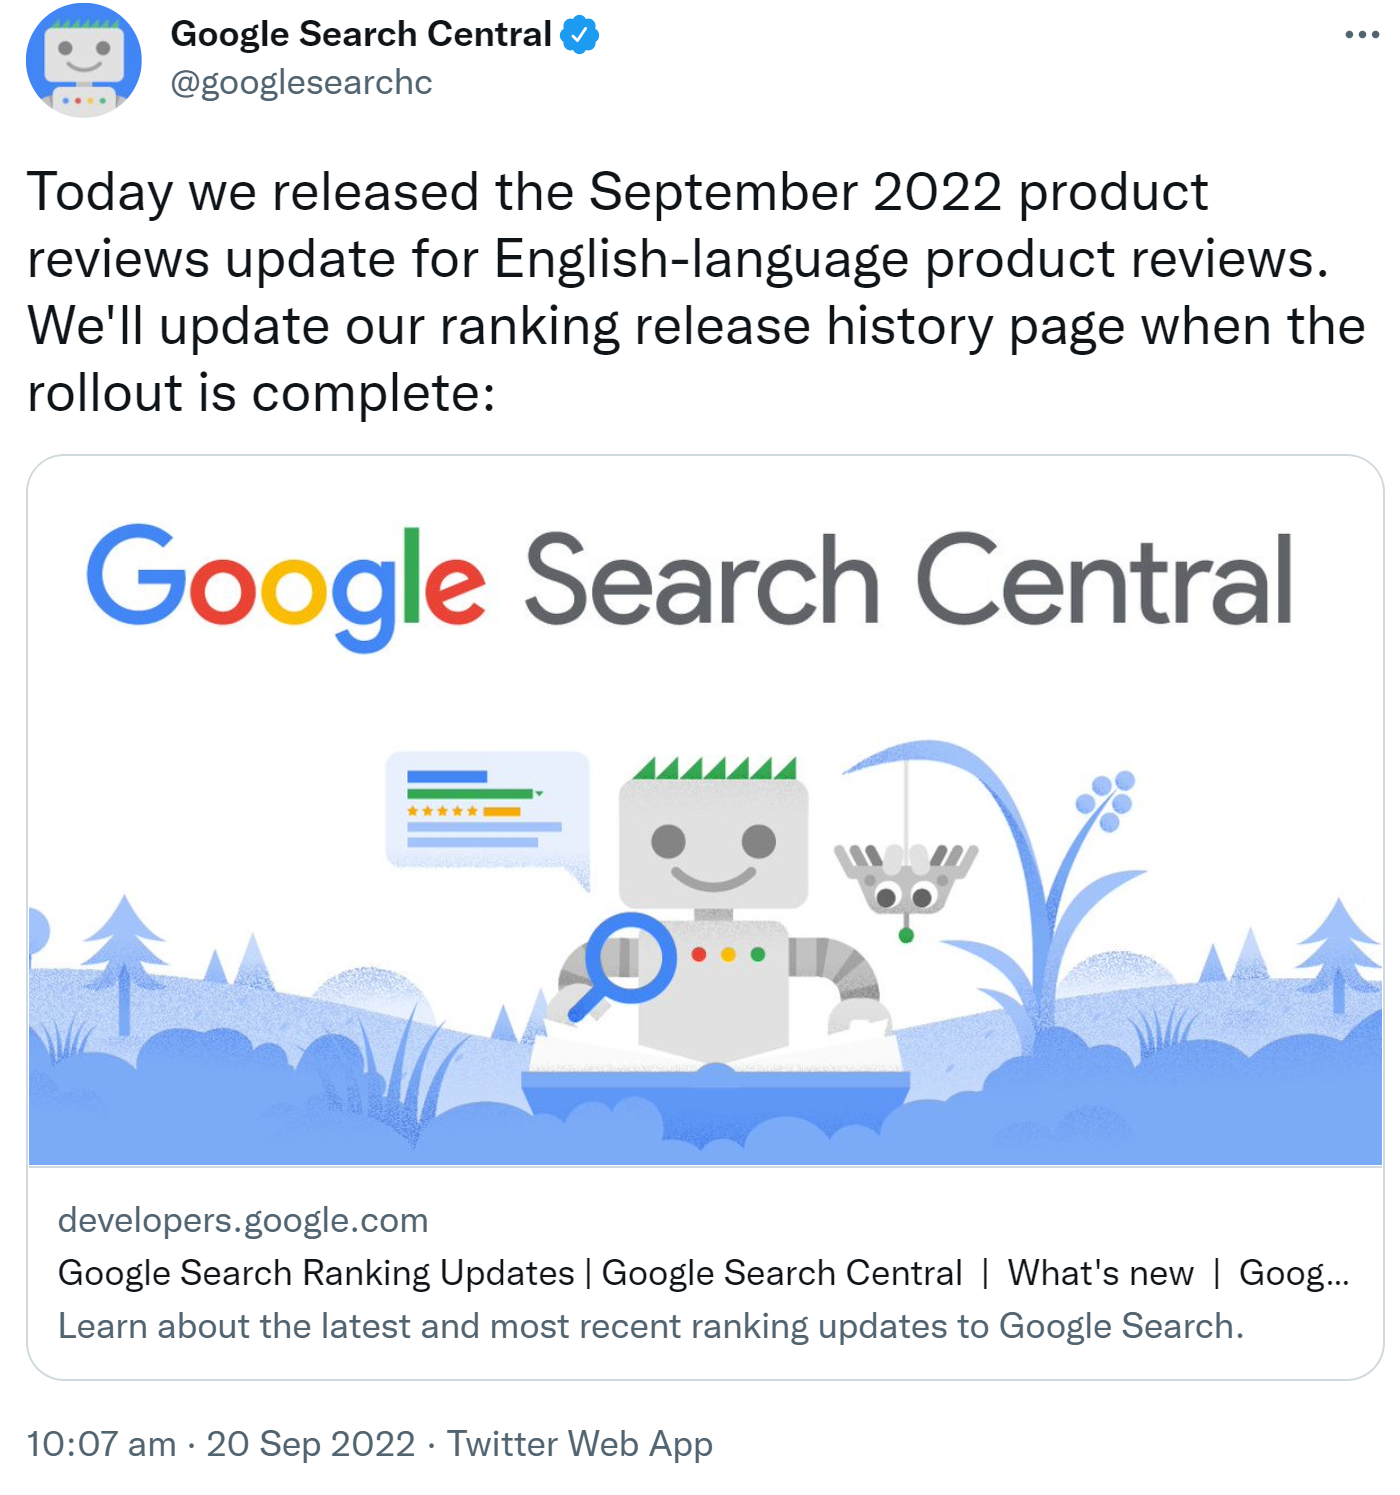 Google rollt das September 2022 Product Reviews Update aus